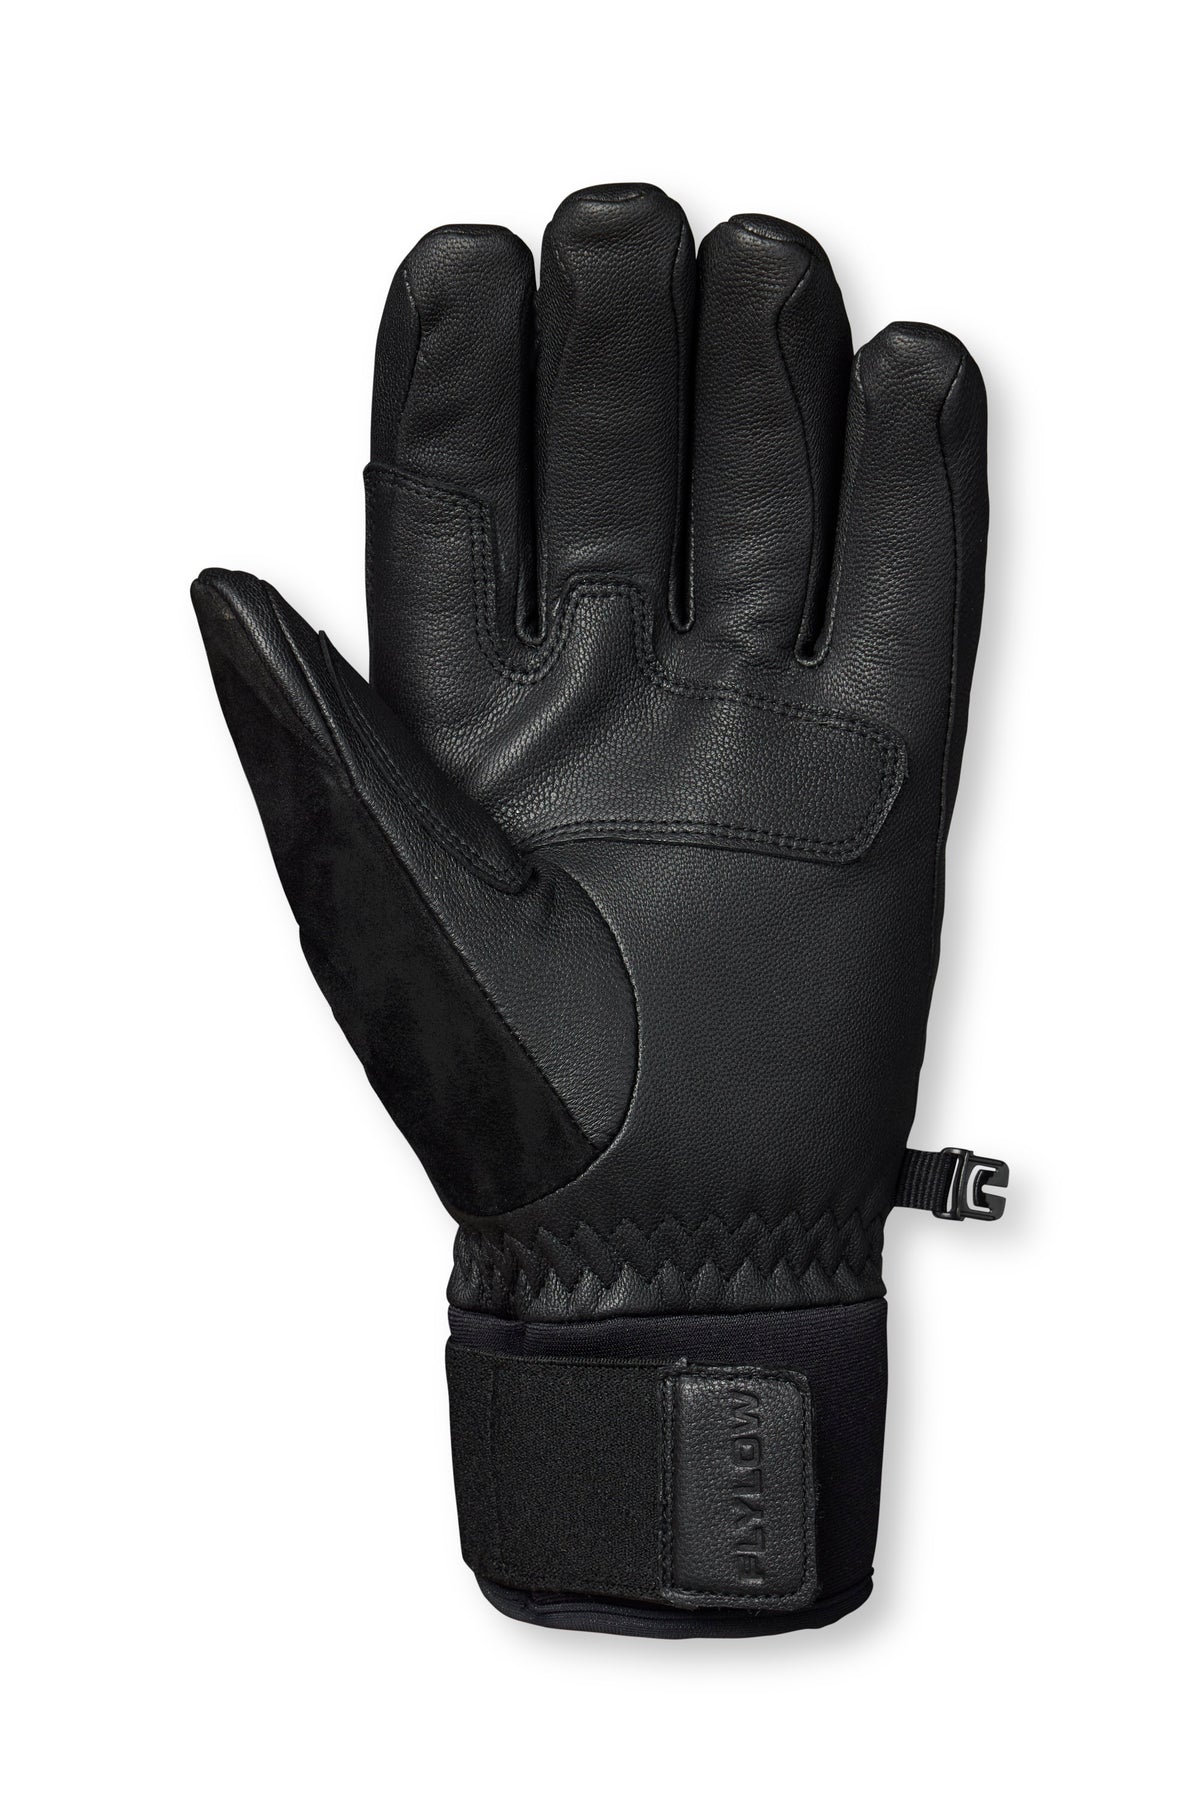 Wolverine Glove - Leather Ski Glove | Flylow – Flylow Gear